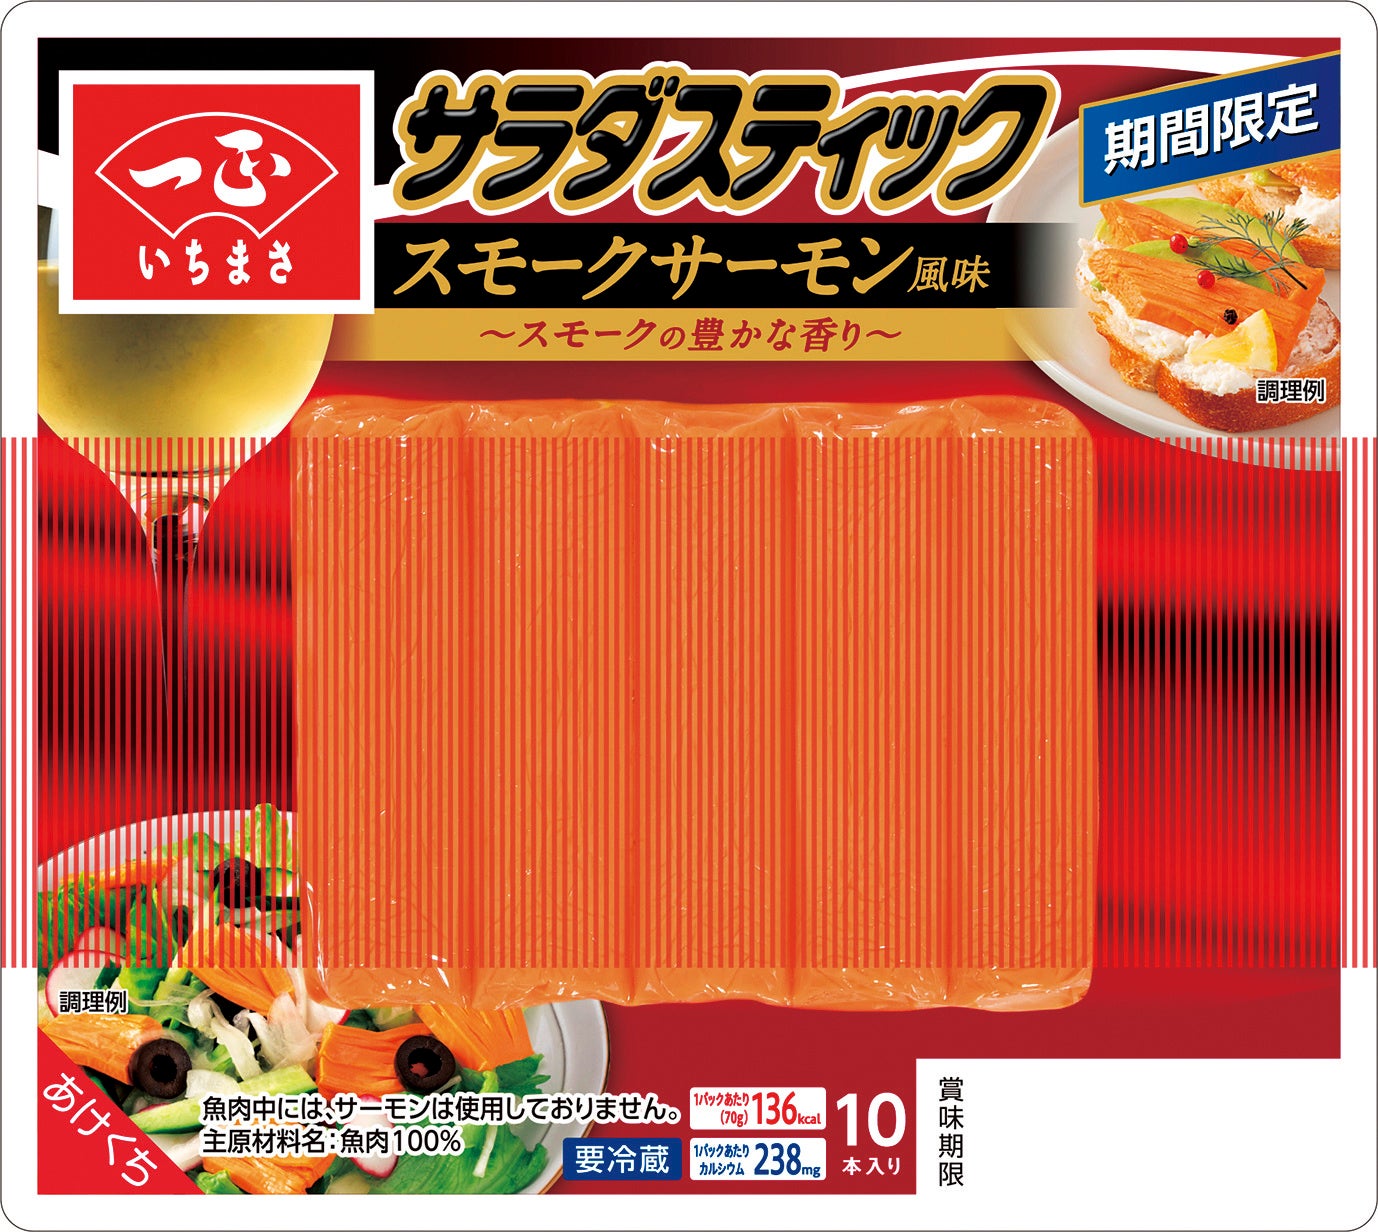 秋の食卓を彩る鮮やかなオレンジ色のかまぼこが登場！濃厚な旨味の「サラダスティック スモークサーモン風味」が期間限定で新発売